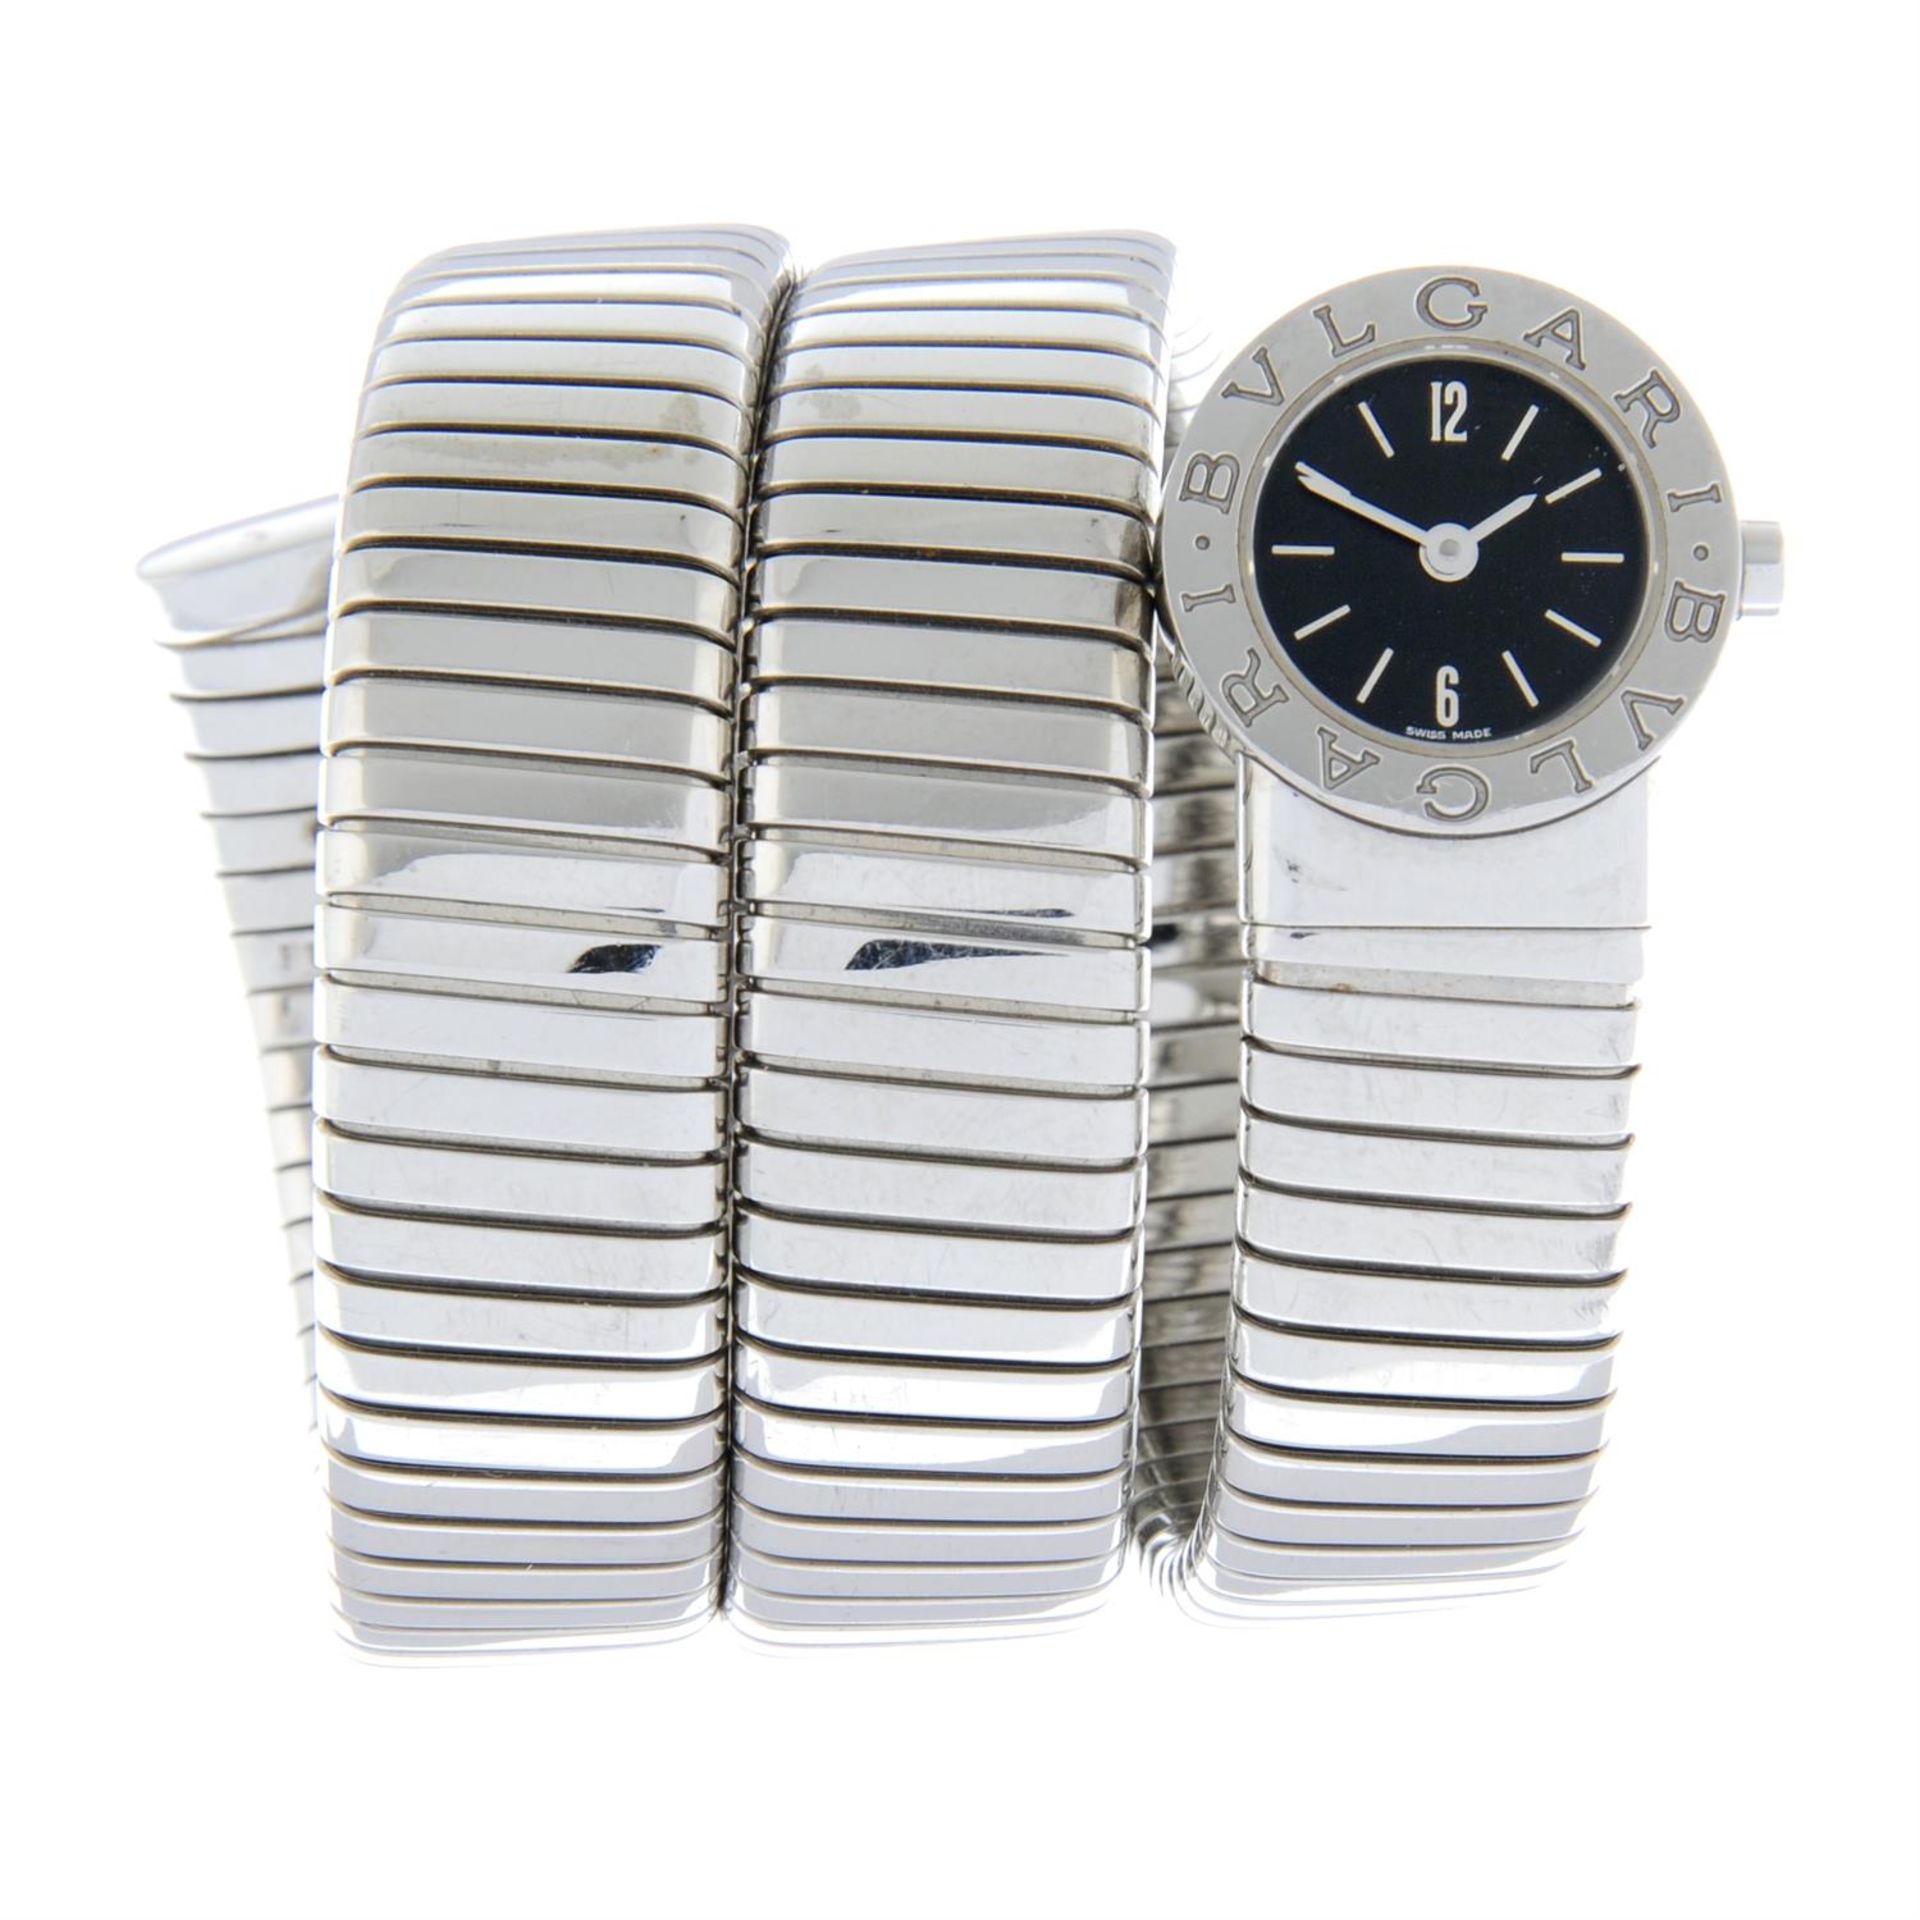 BULGARI - a stainless steel Serpenti bracelet watch, 19mm.